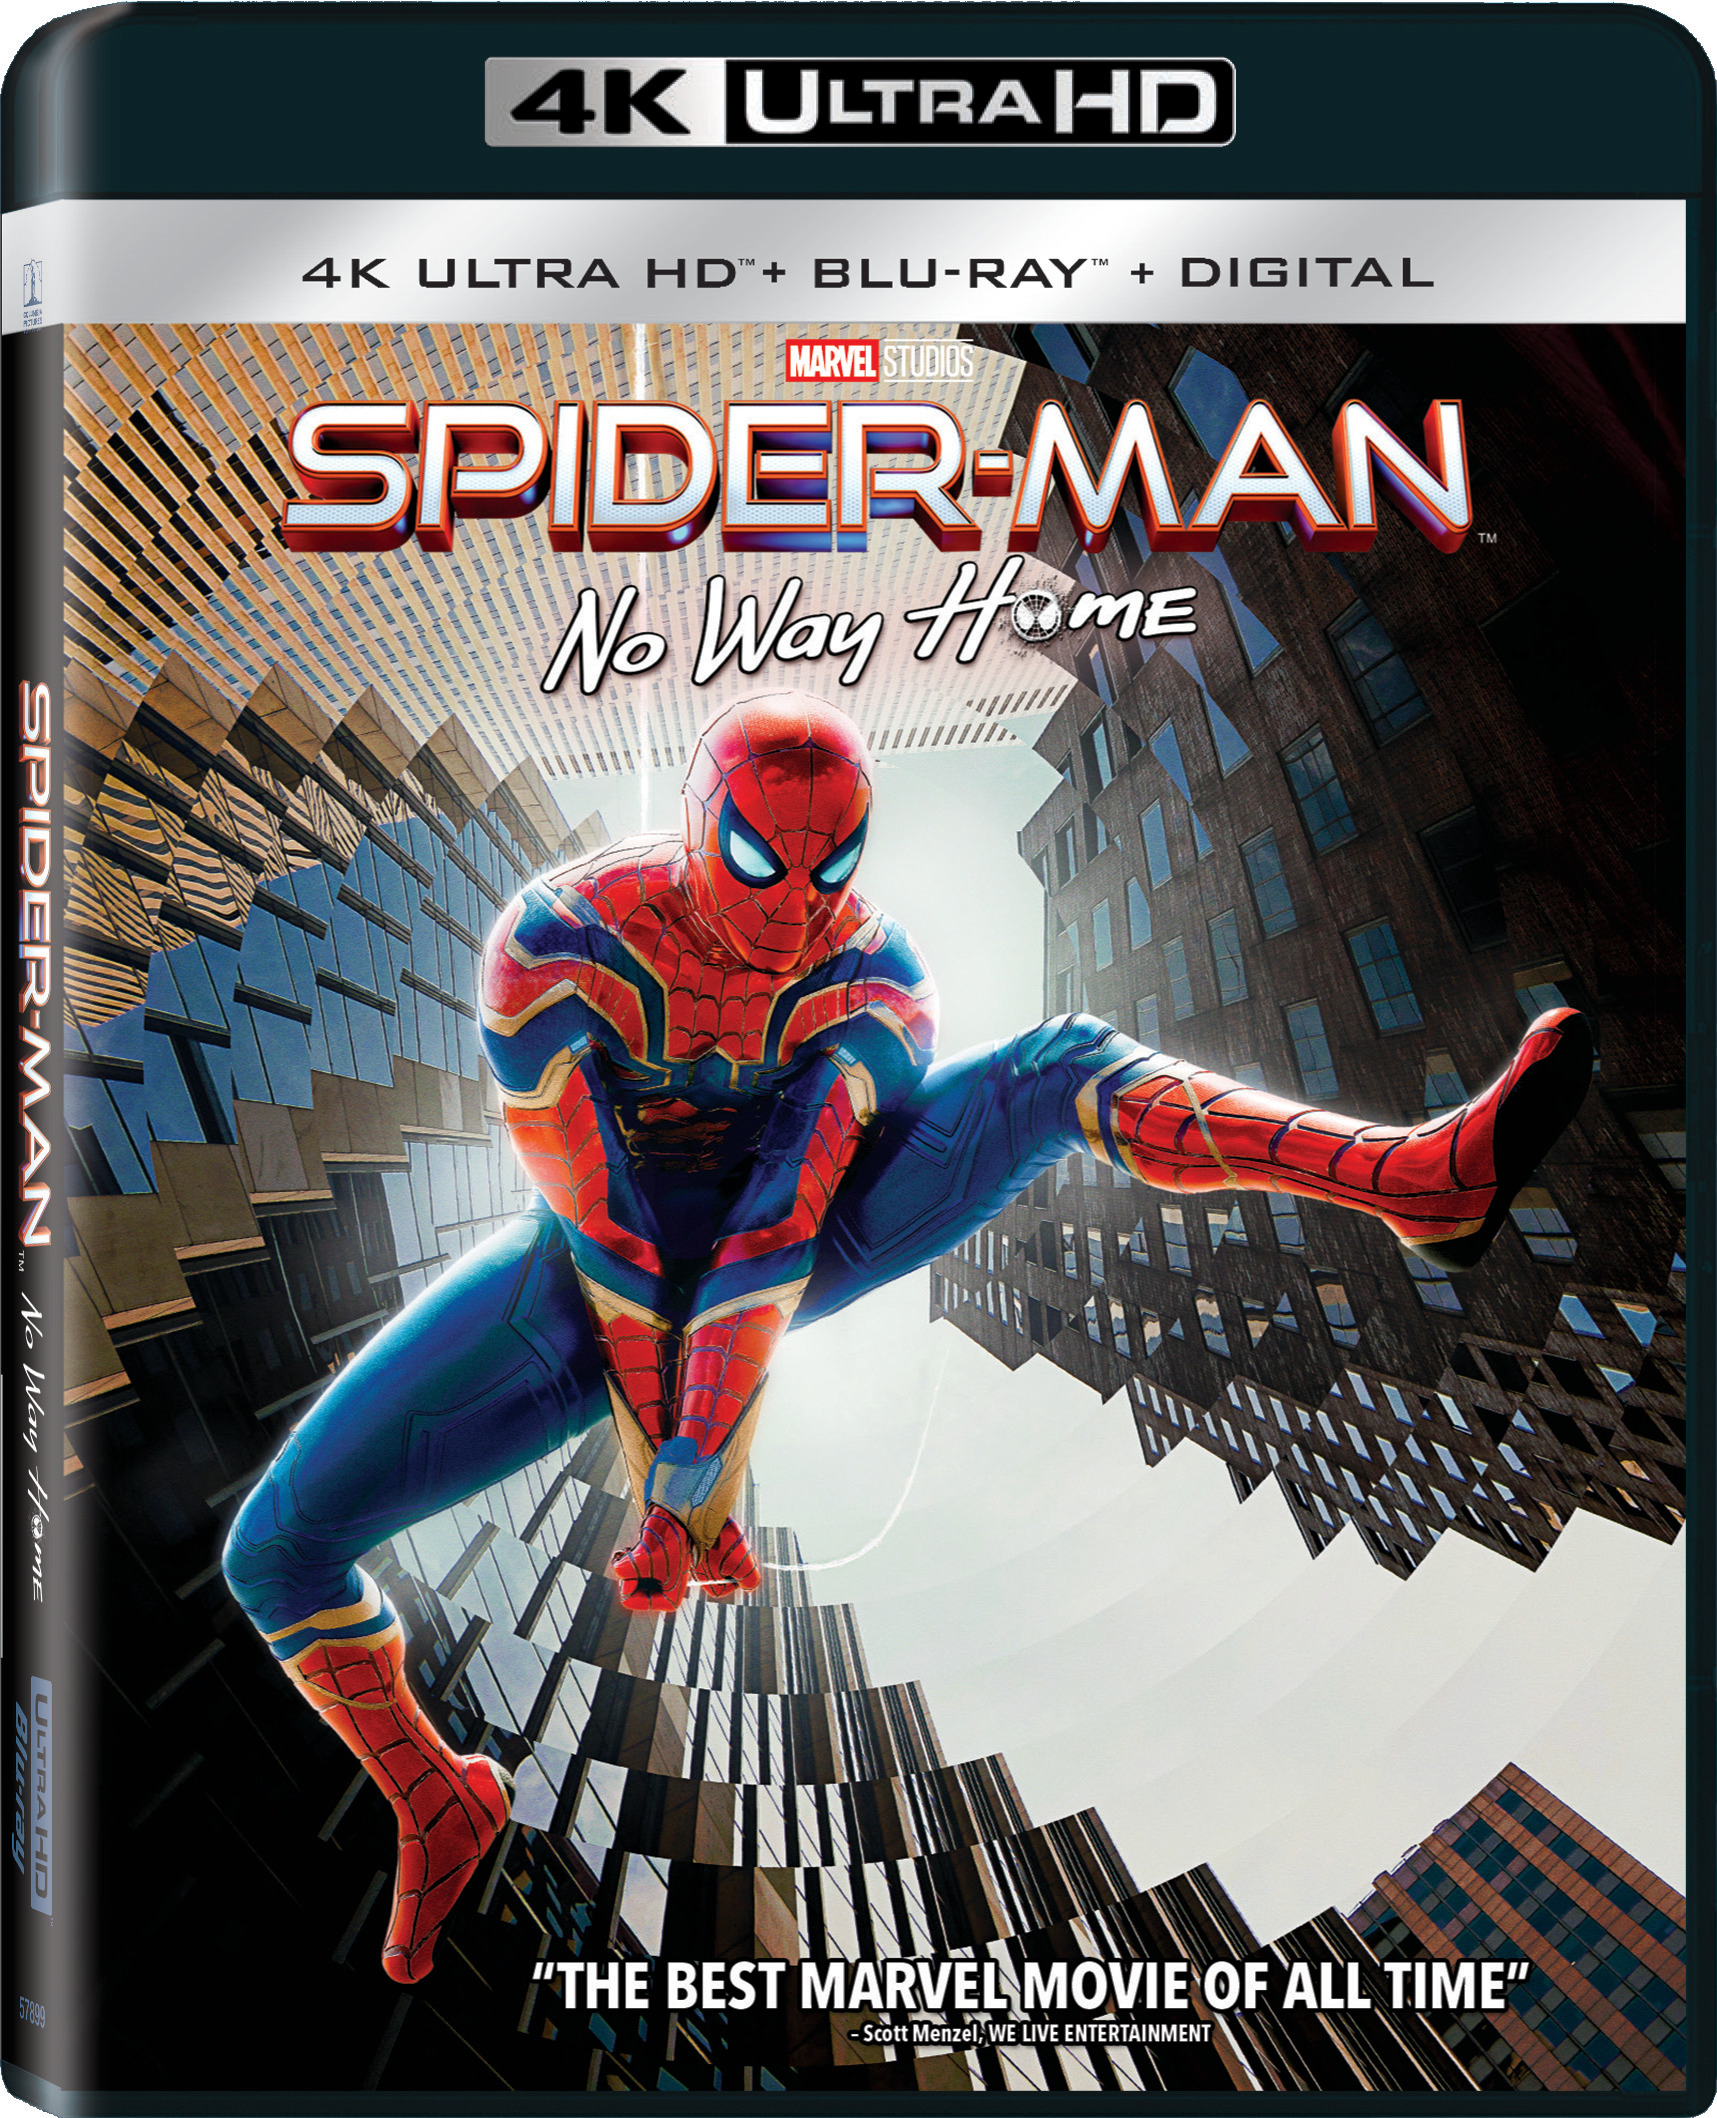 Avengers: Infinity War [Includes Digital Copy] [4K Ultra HD  Blu-ray/Blu-ray] [2018] - Best Buy